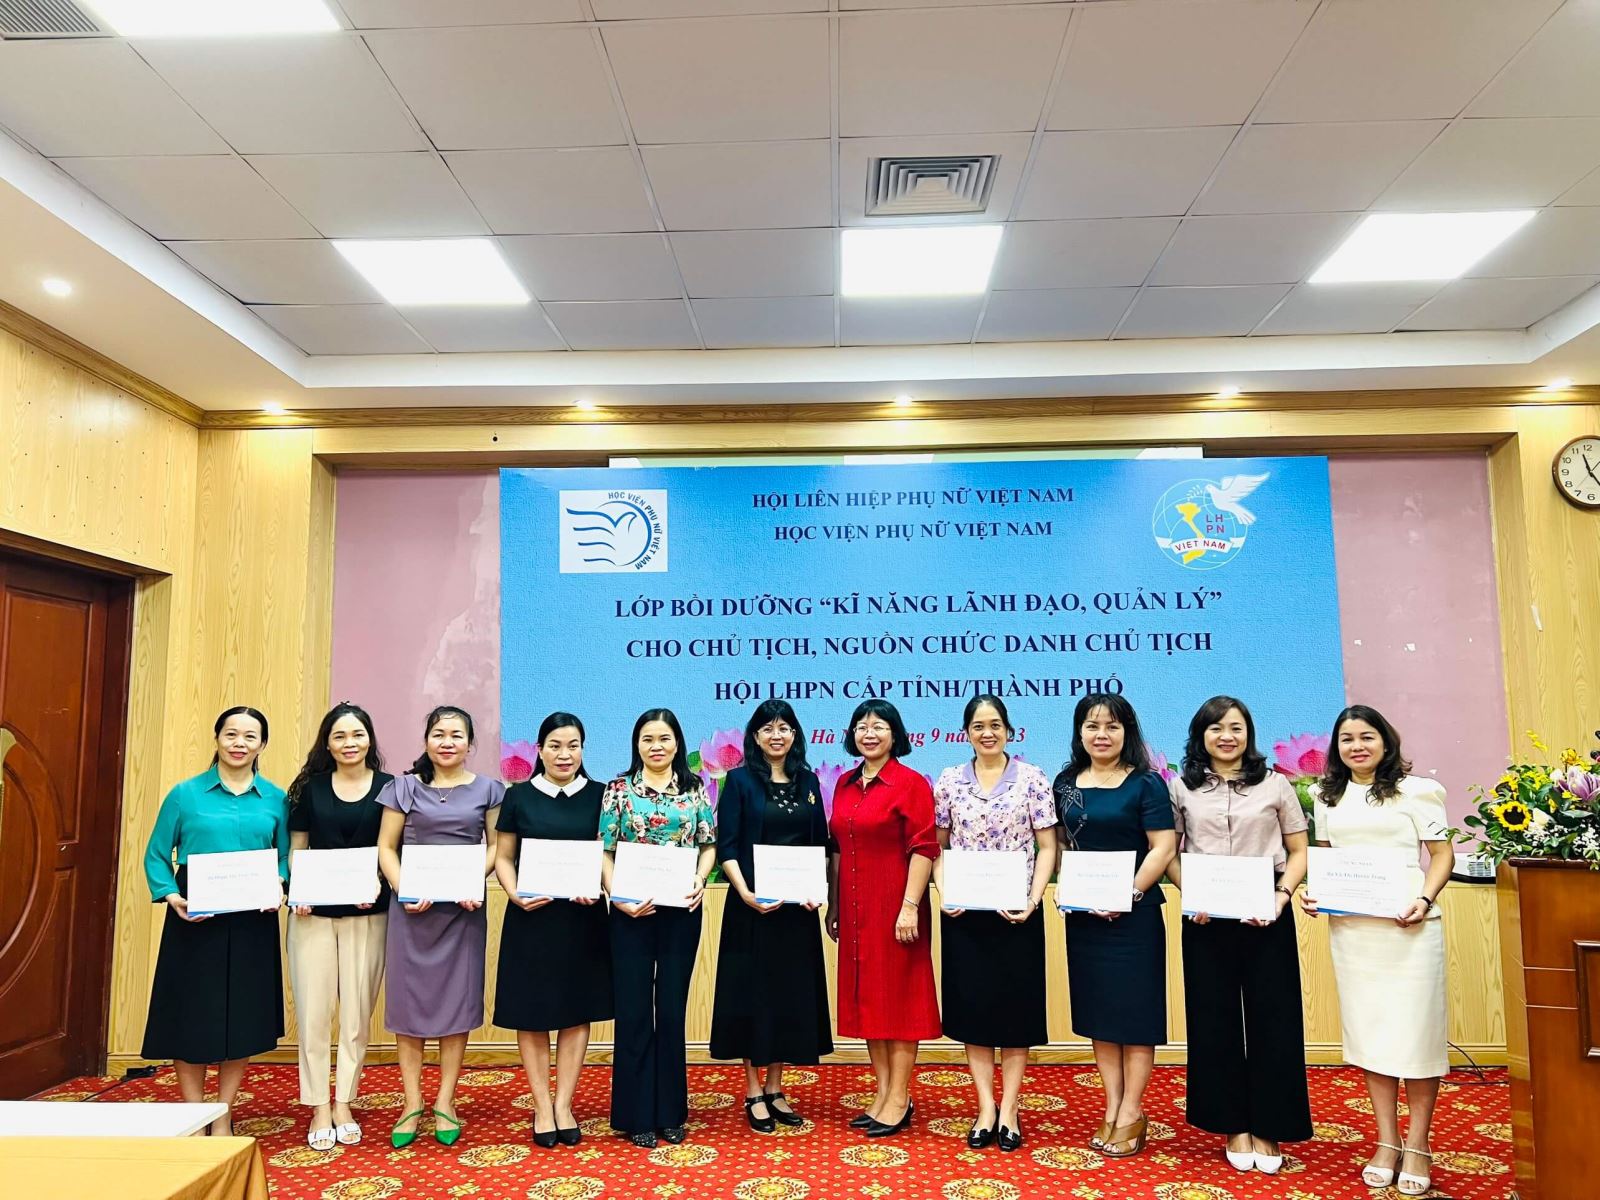 Học viện Phụ nữ Việt Nam bồi dưỡng kỹ năng lãnh đạo, quản lý cho lãnh đạo Hội cấp tỉnh/thành phố 